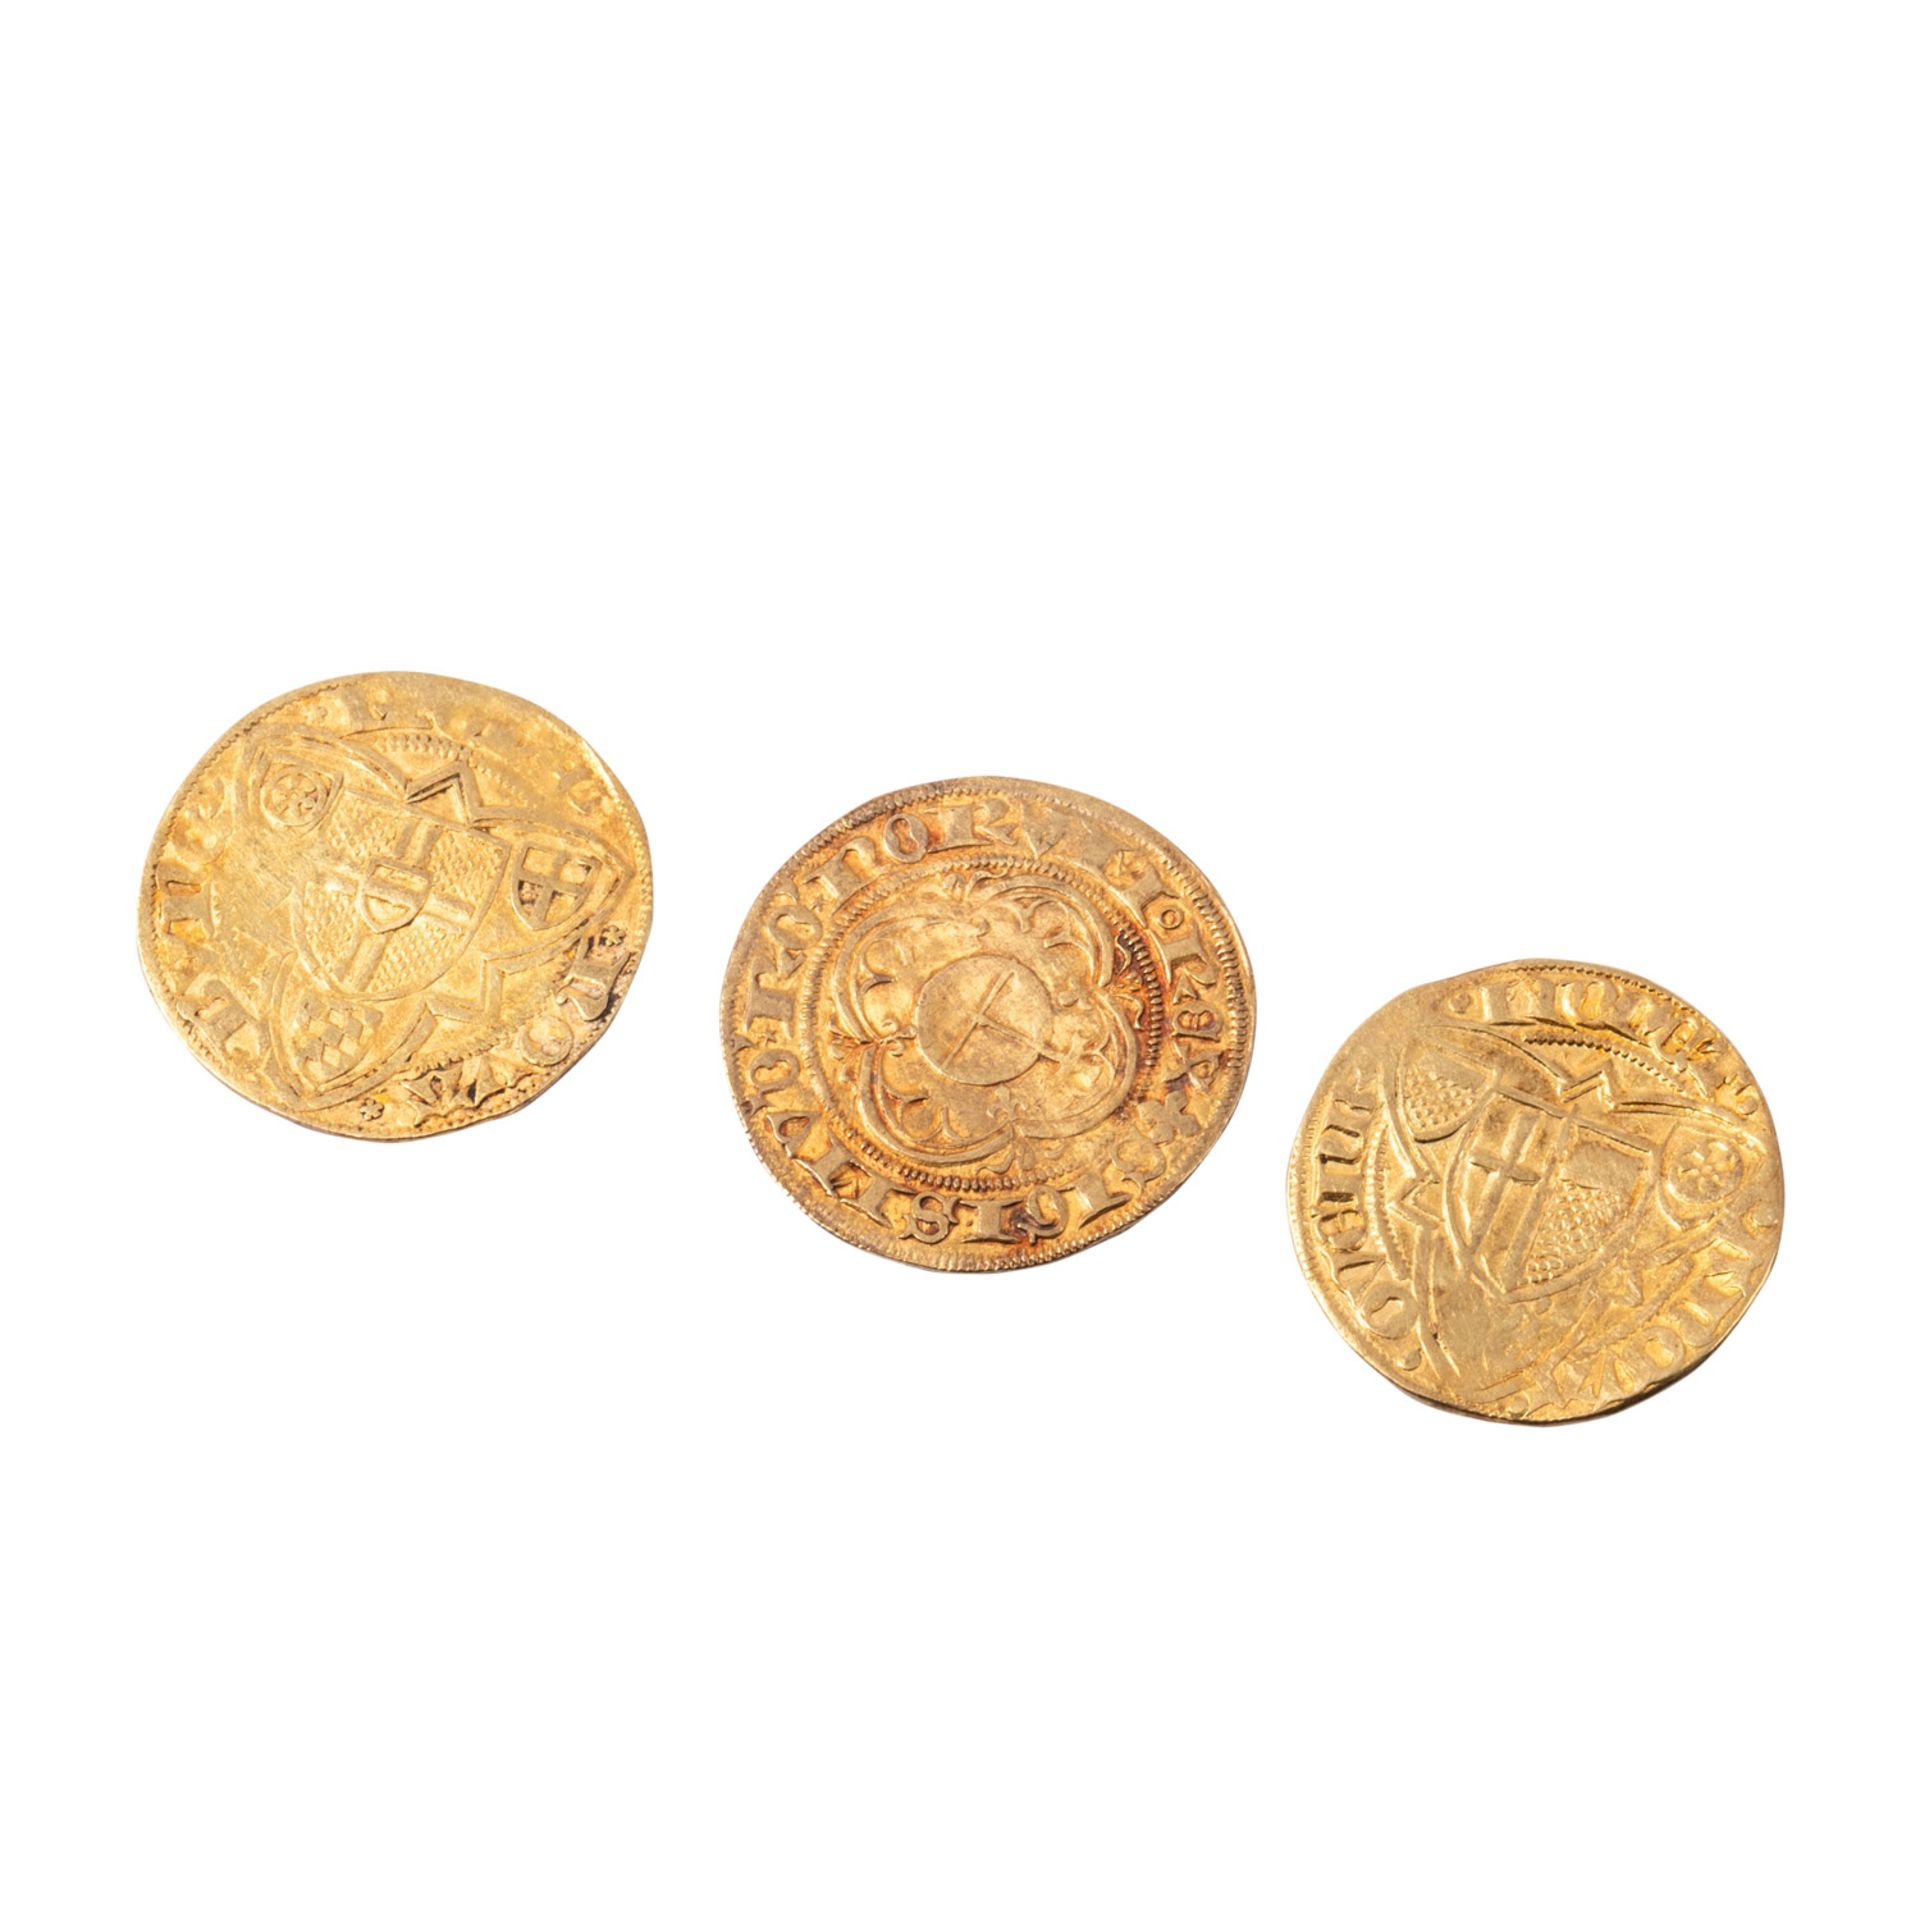 PFANDAUKTION - 63 Goldmünzen,  - Bild 11 aus 11